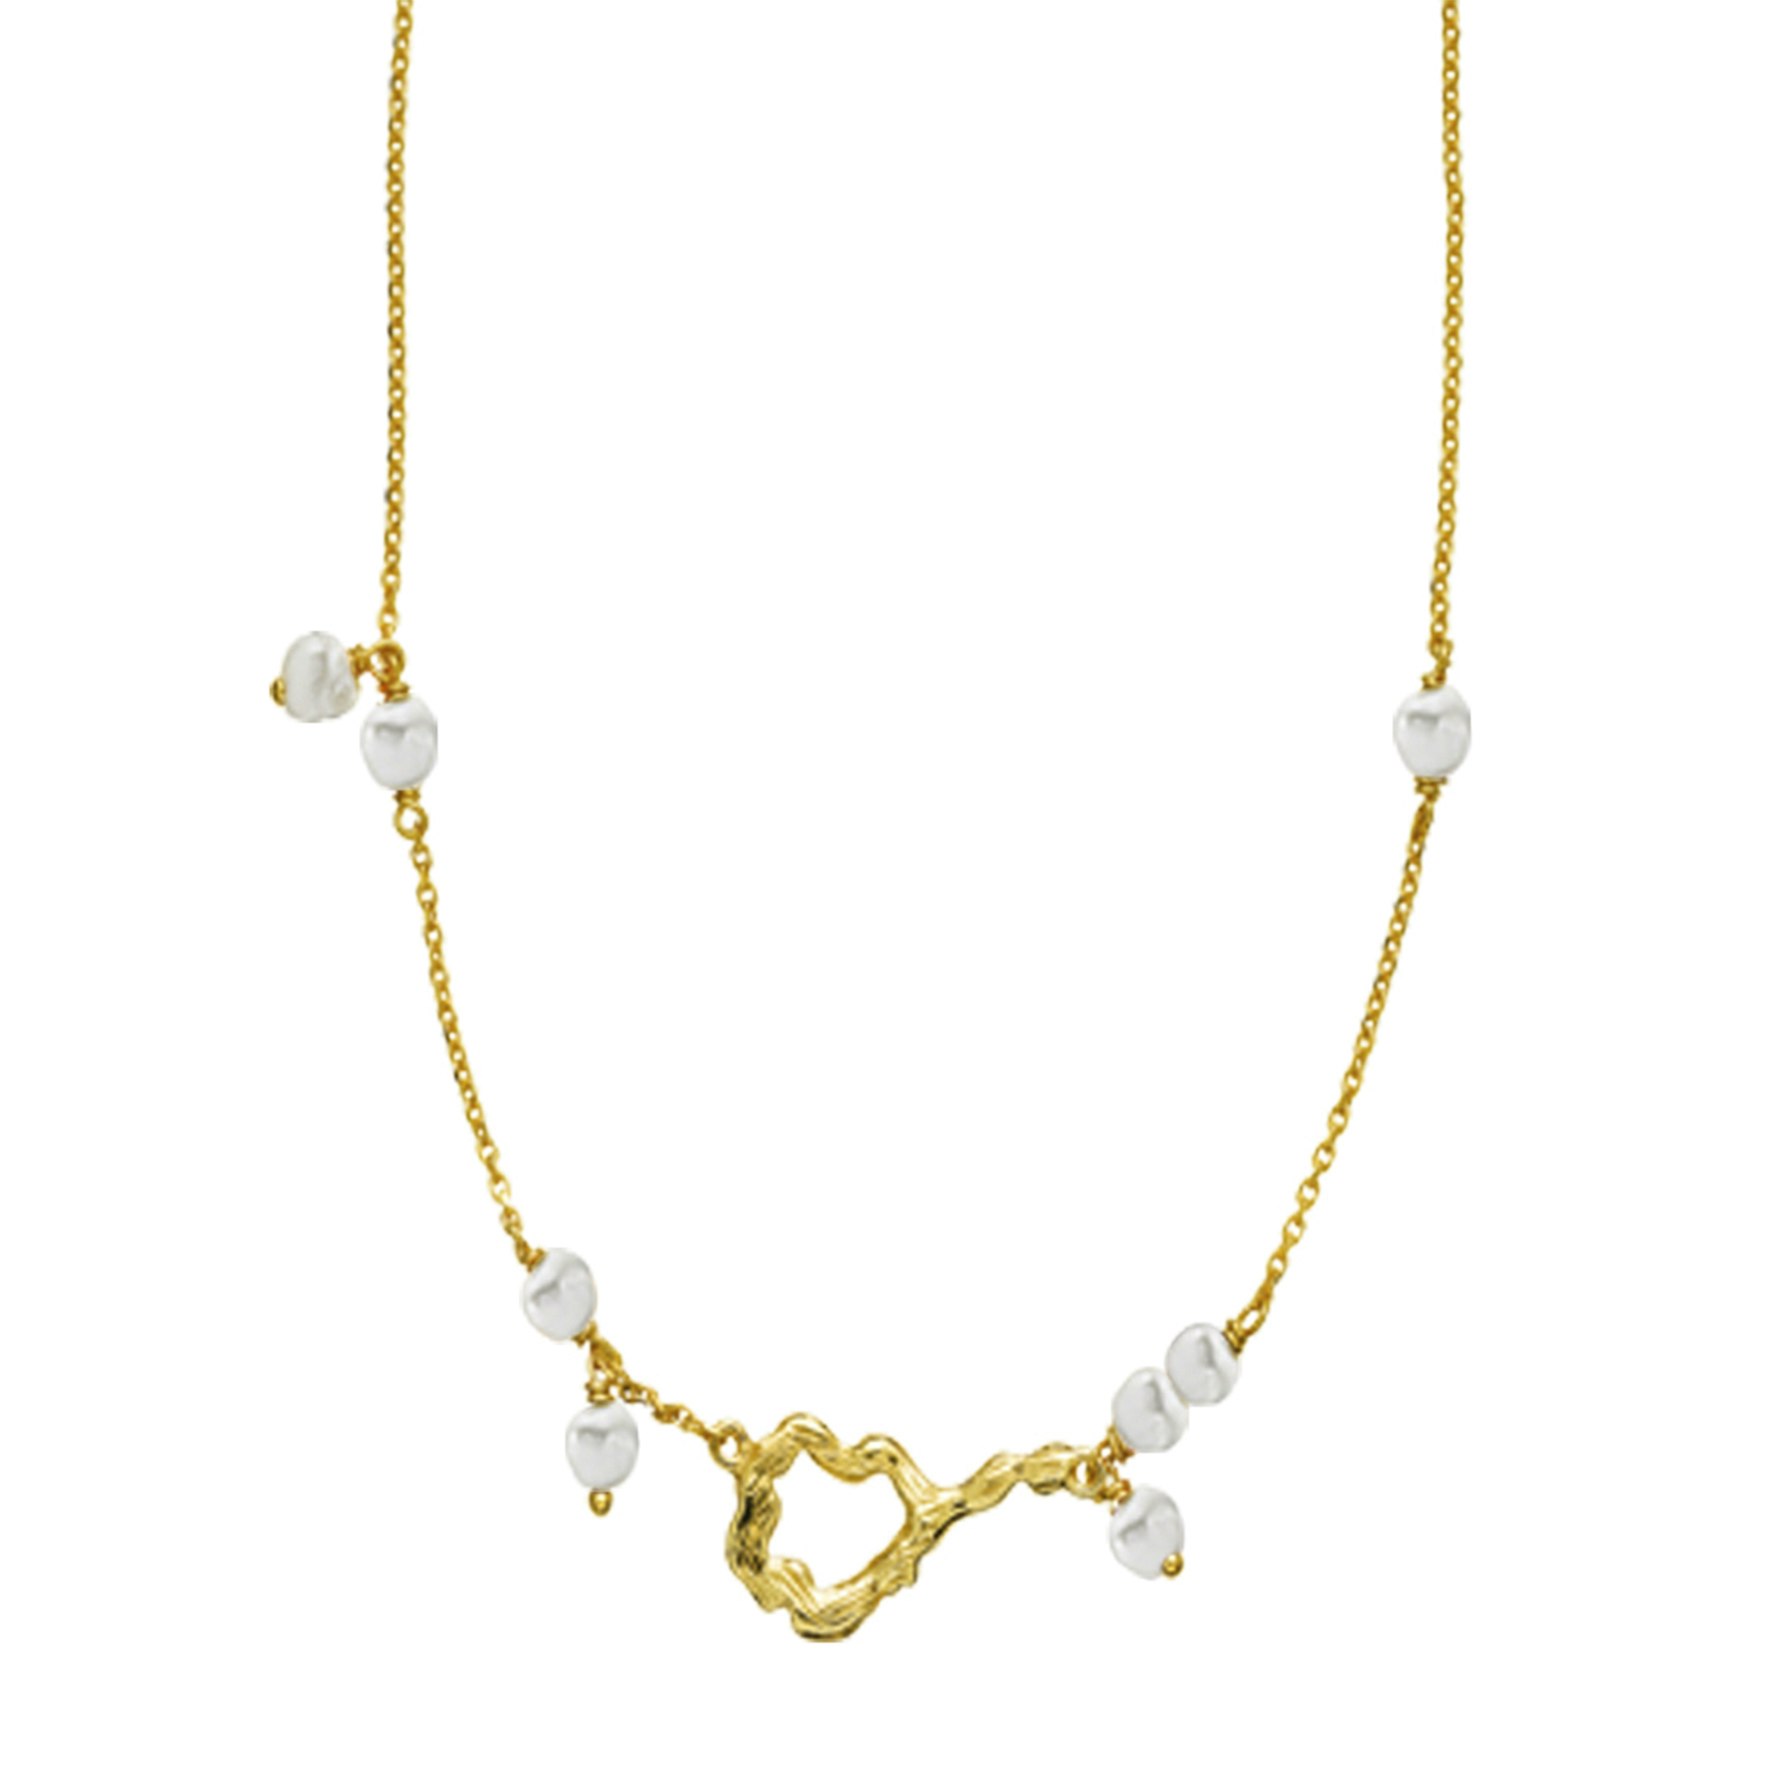 Lærke Bentsen By Sistie Necklace With Pearls von Sistie in Vergoldet-Silber Sterling 925